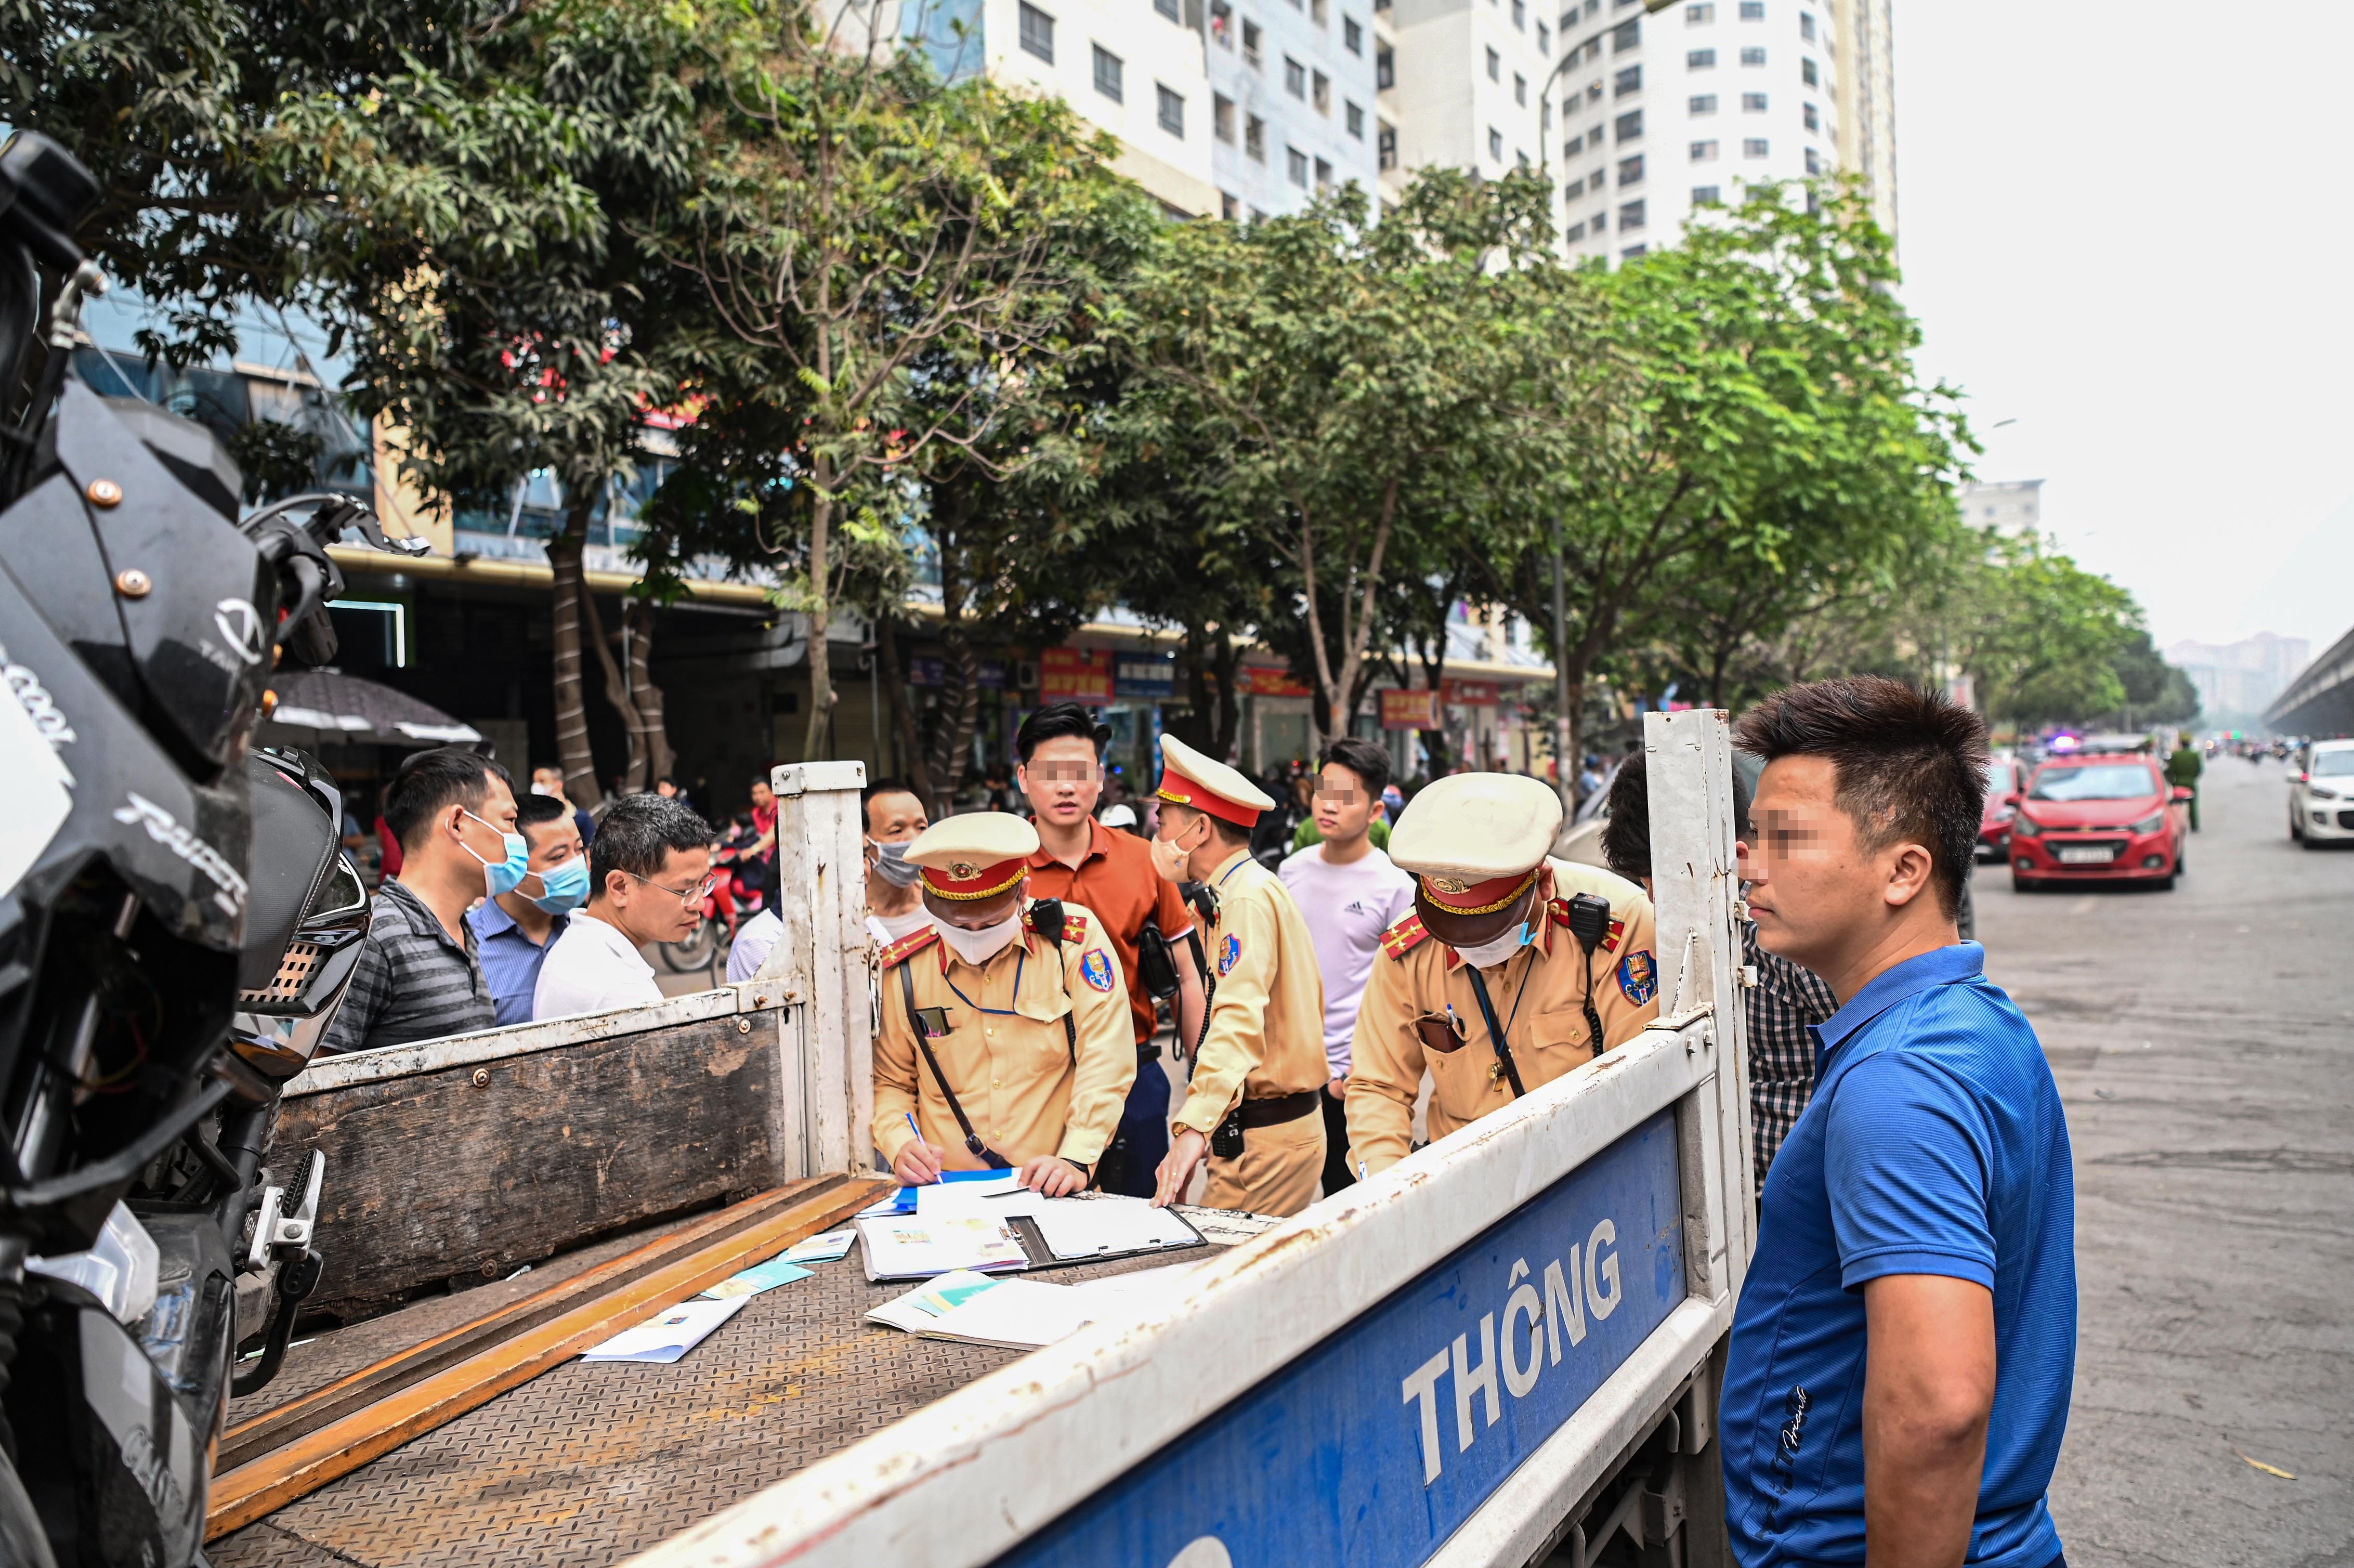 Đỗ xe ở lòng đường Hà Nội, tài xế xếp hàng dài chờ bị xử phạt - ảnh 16